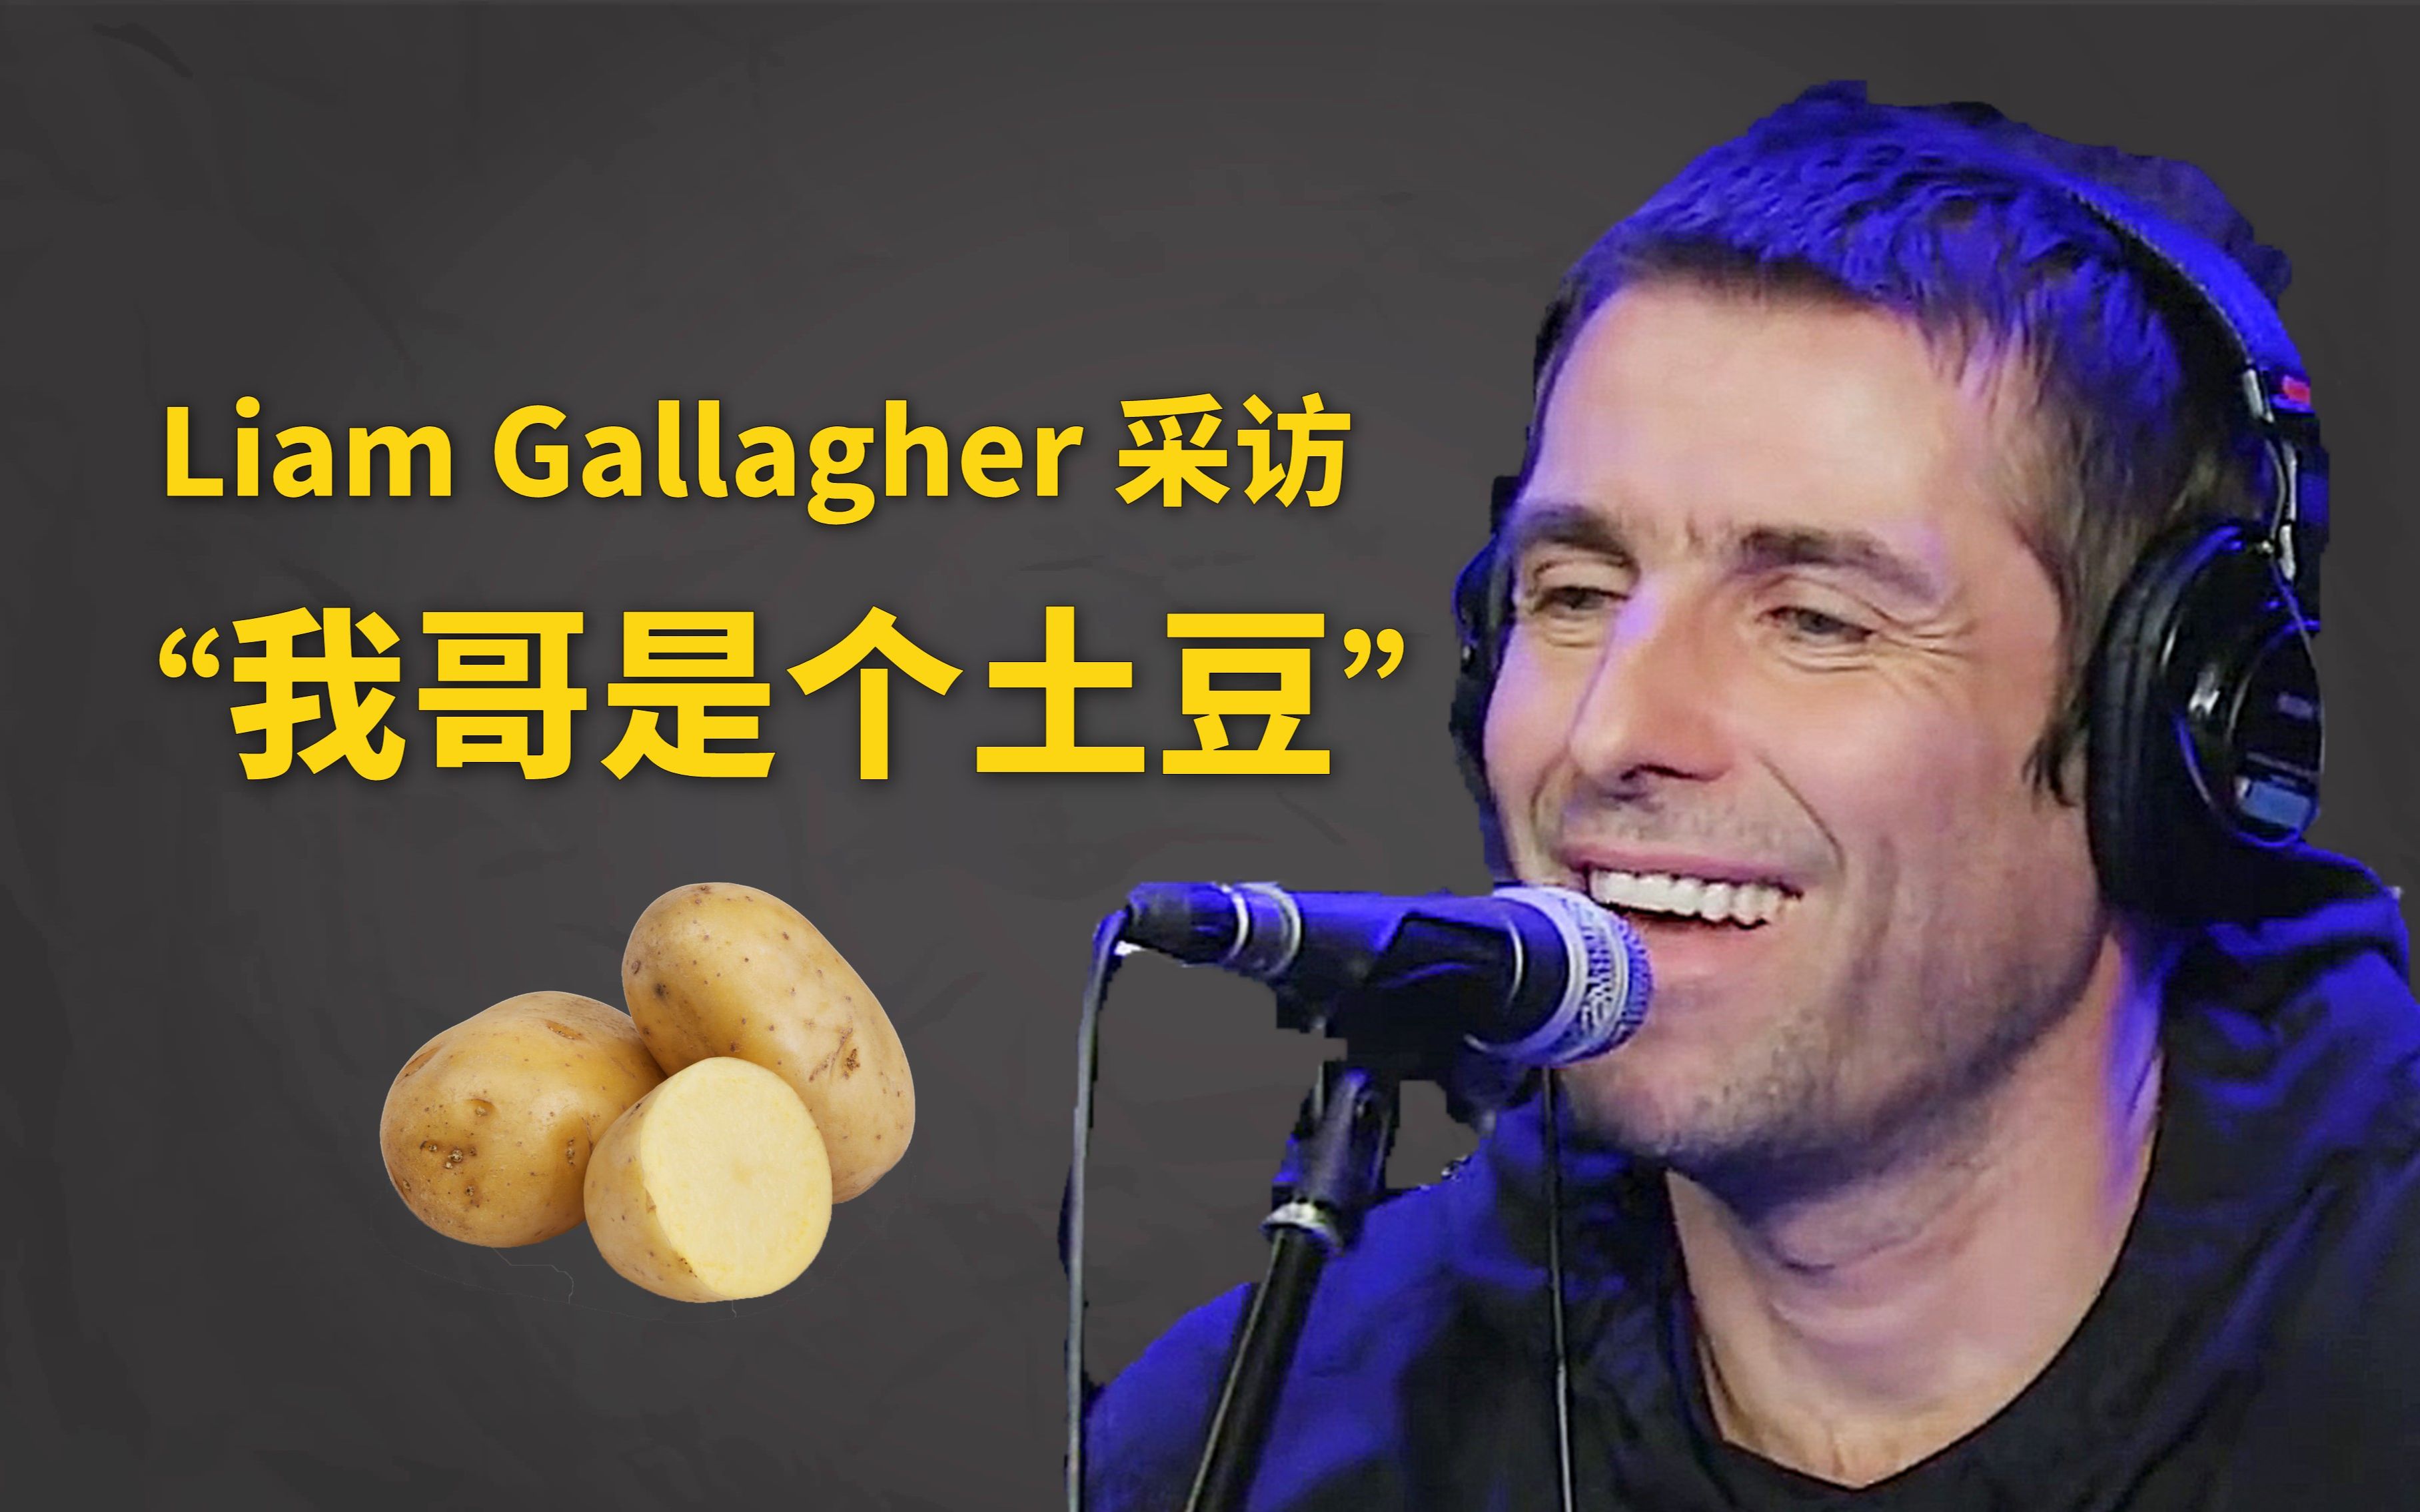 【字幕】前绿洲乐队主唱 Liam Gallagher 采访“我哥就是个土豆”